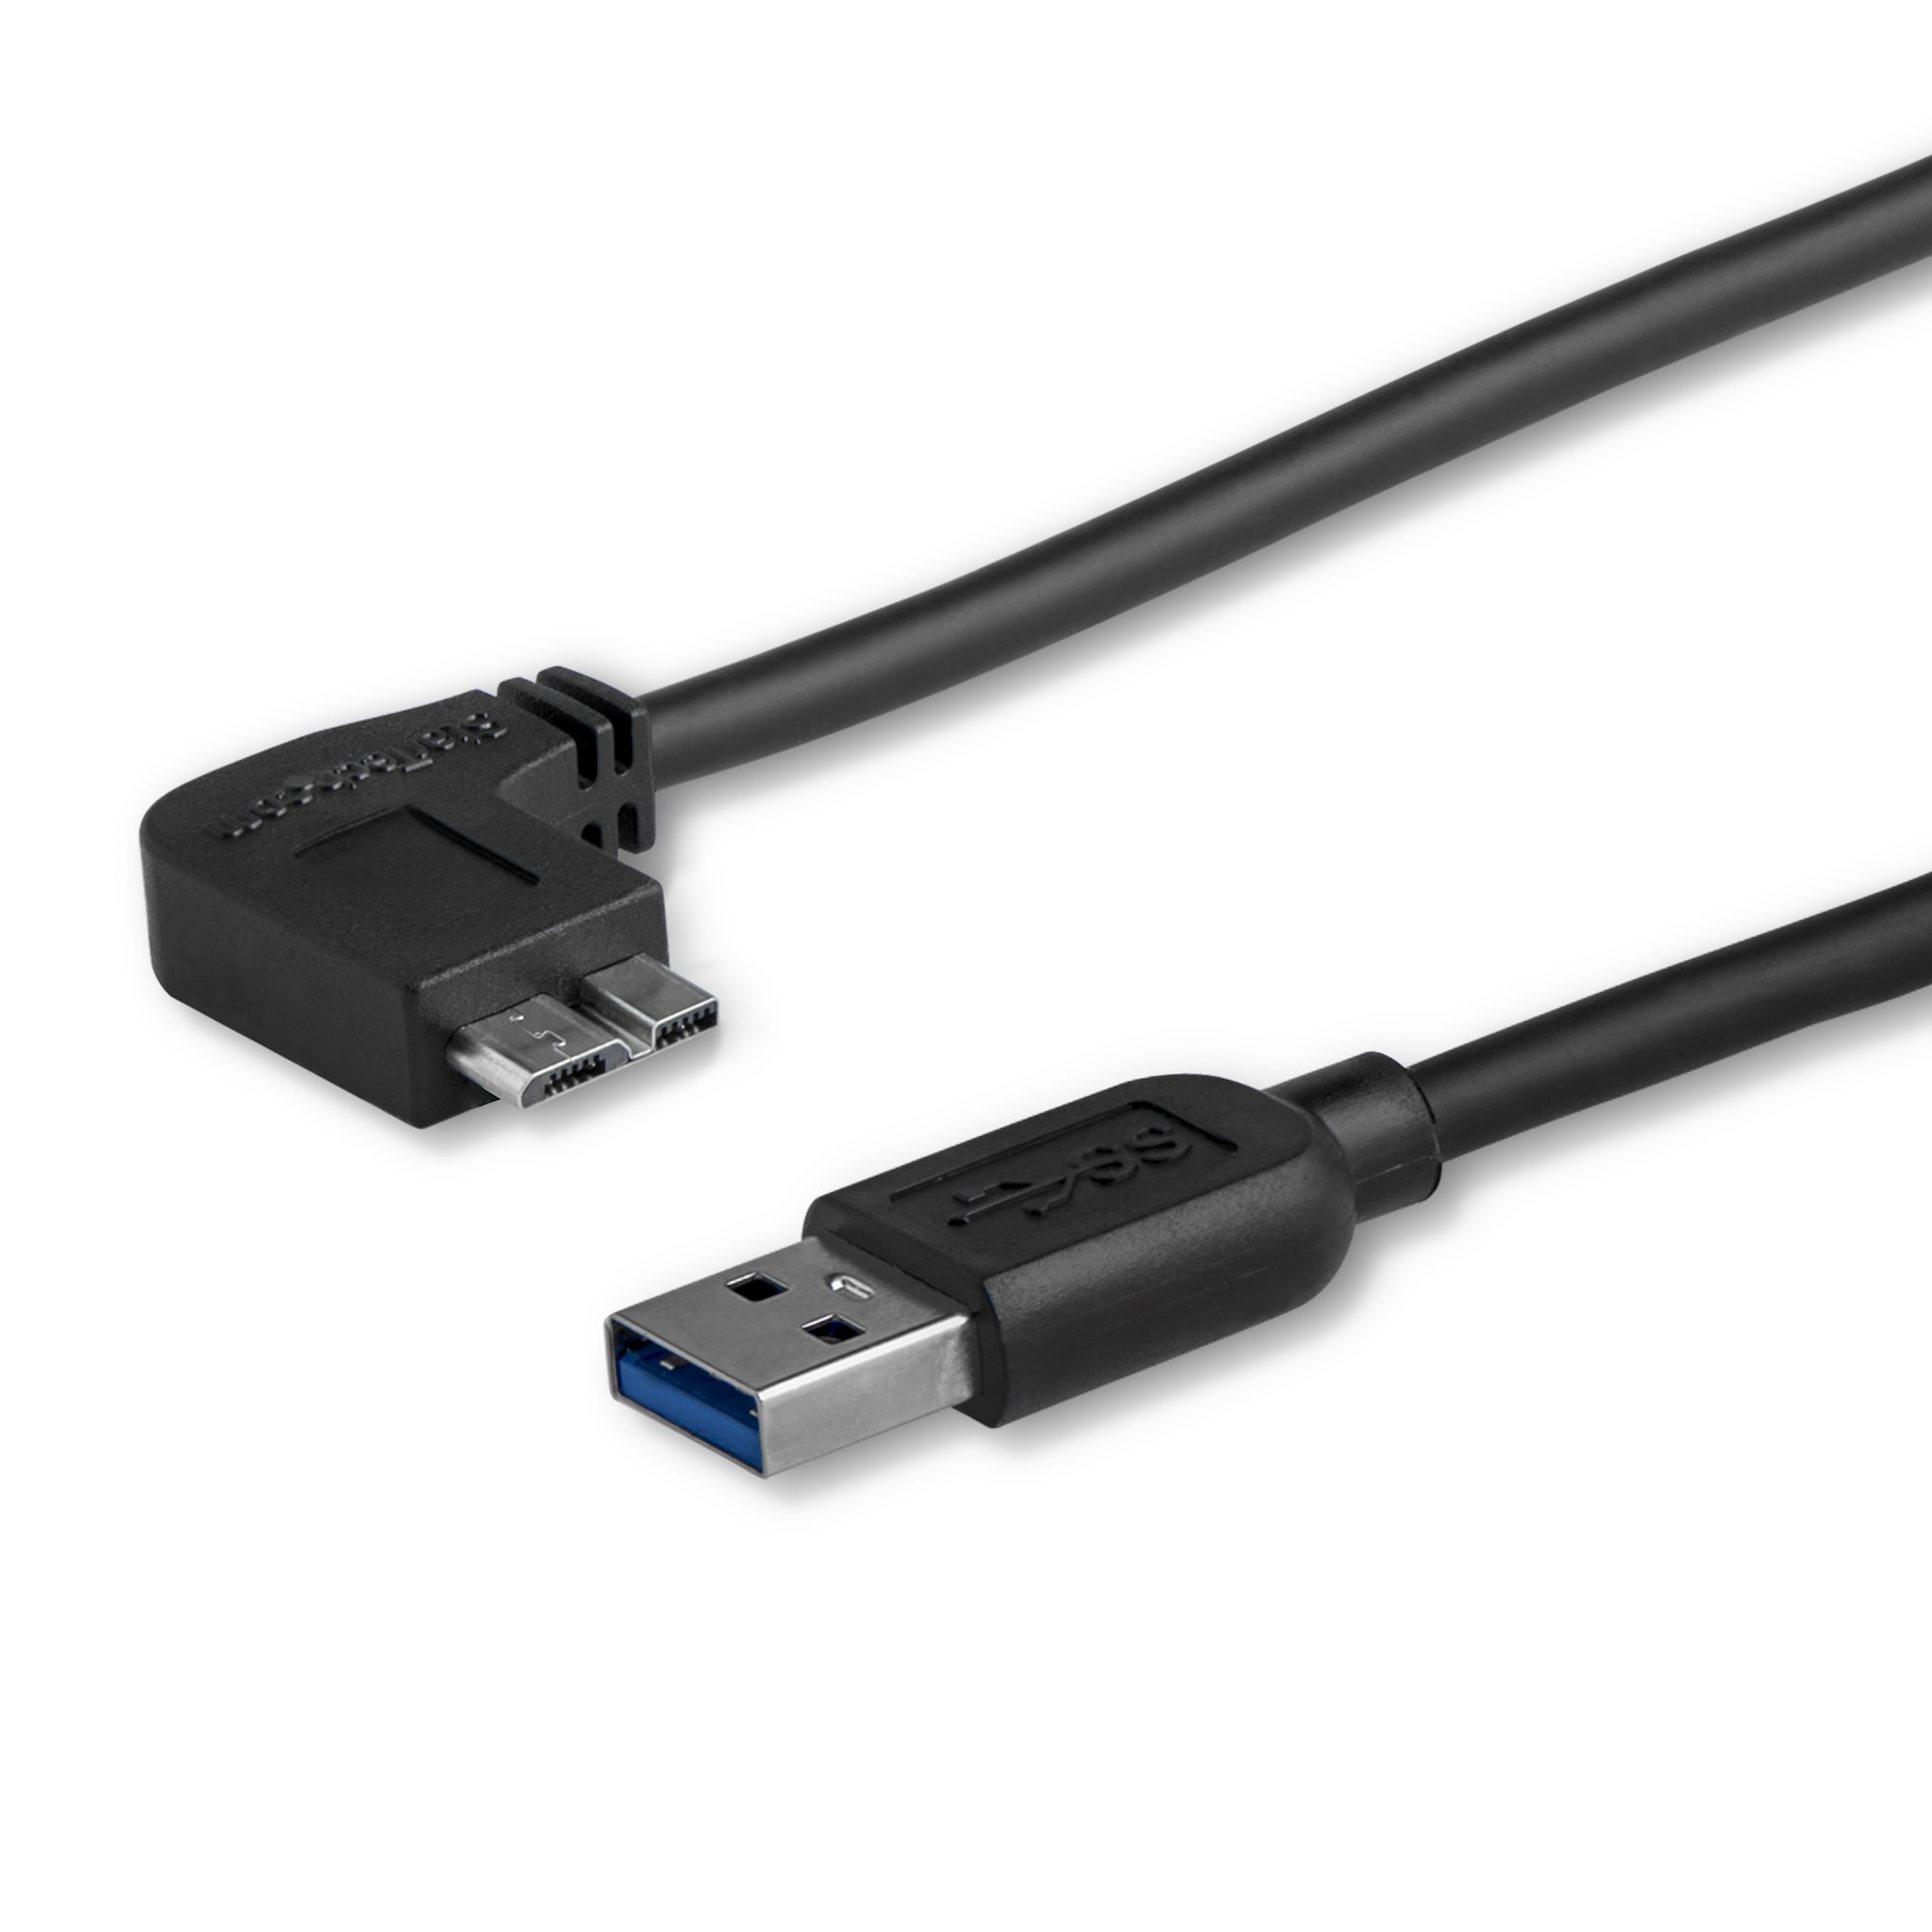 2m Slim USB Cable - M/M - USB 3.0 Cables | StarTech.com